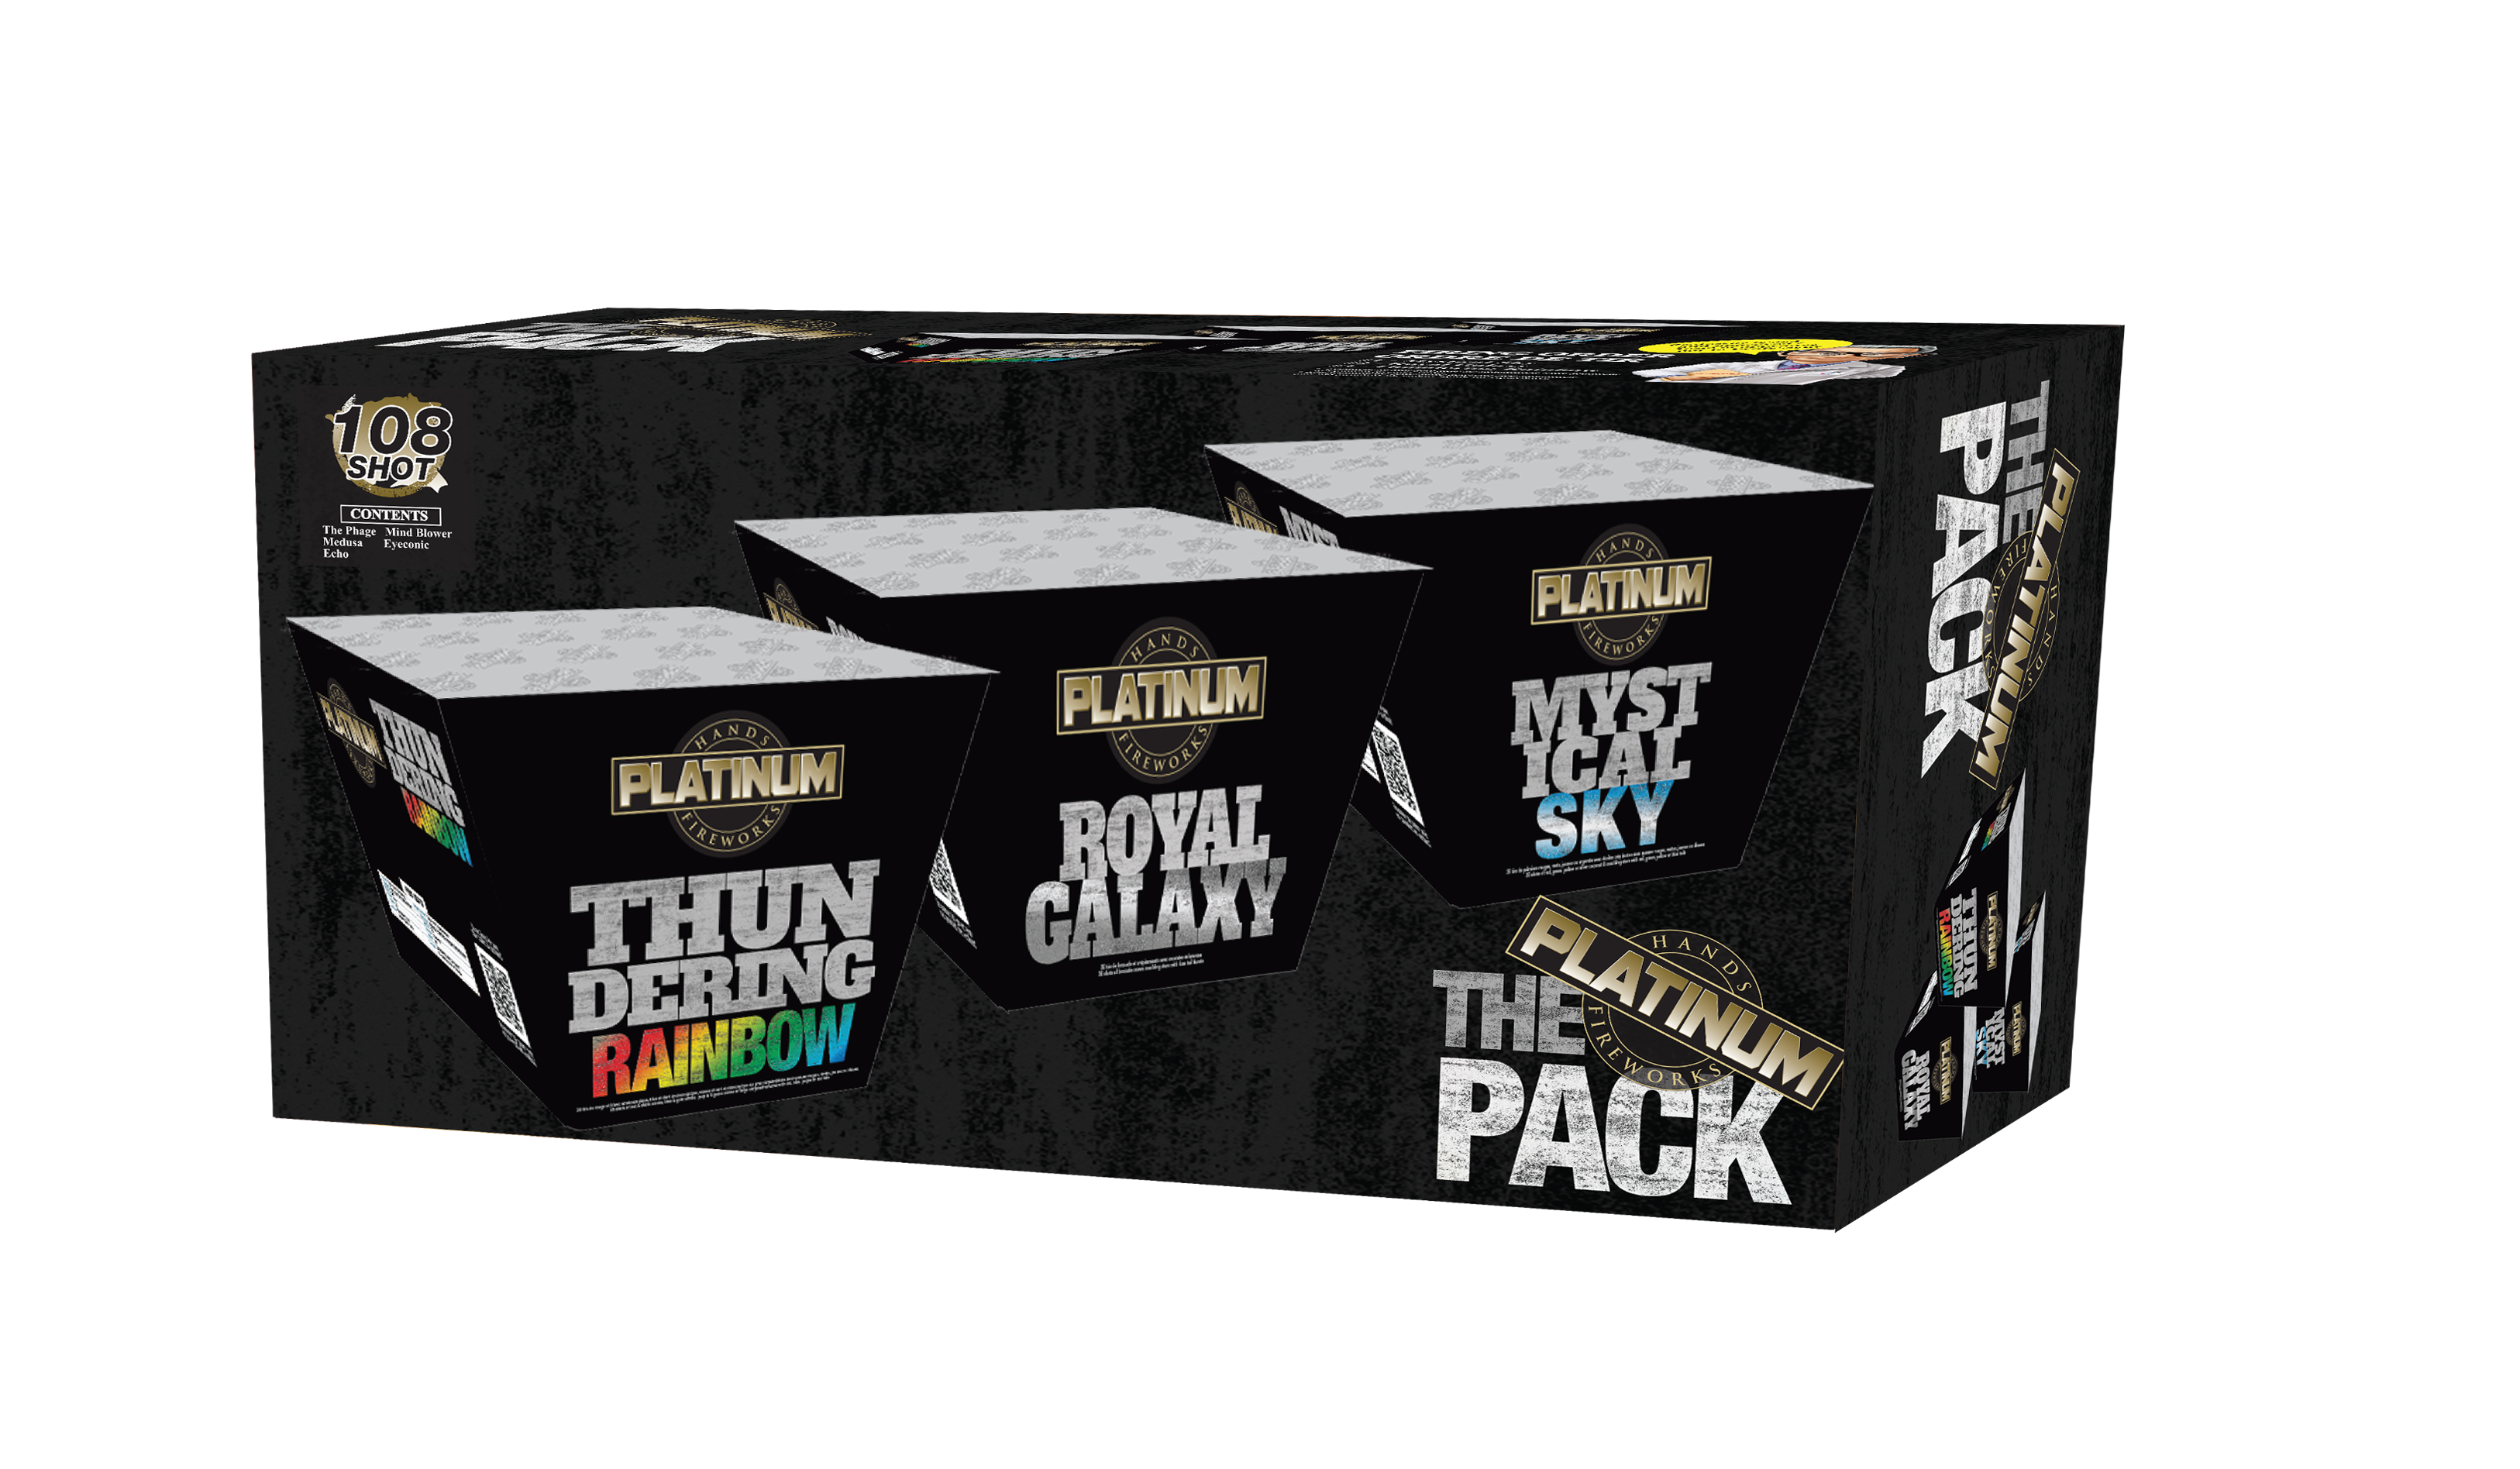 The Platinum Pack